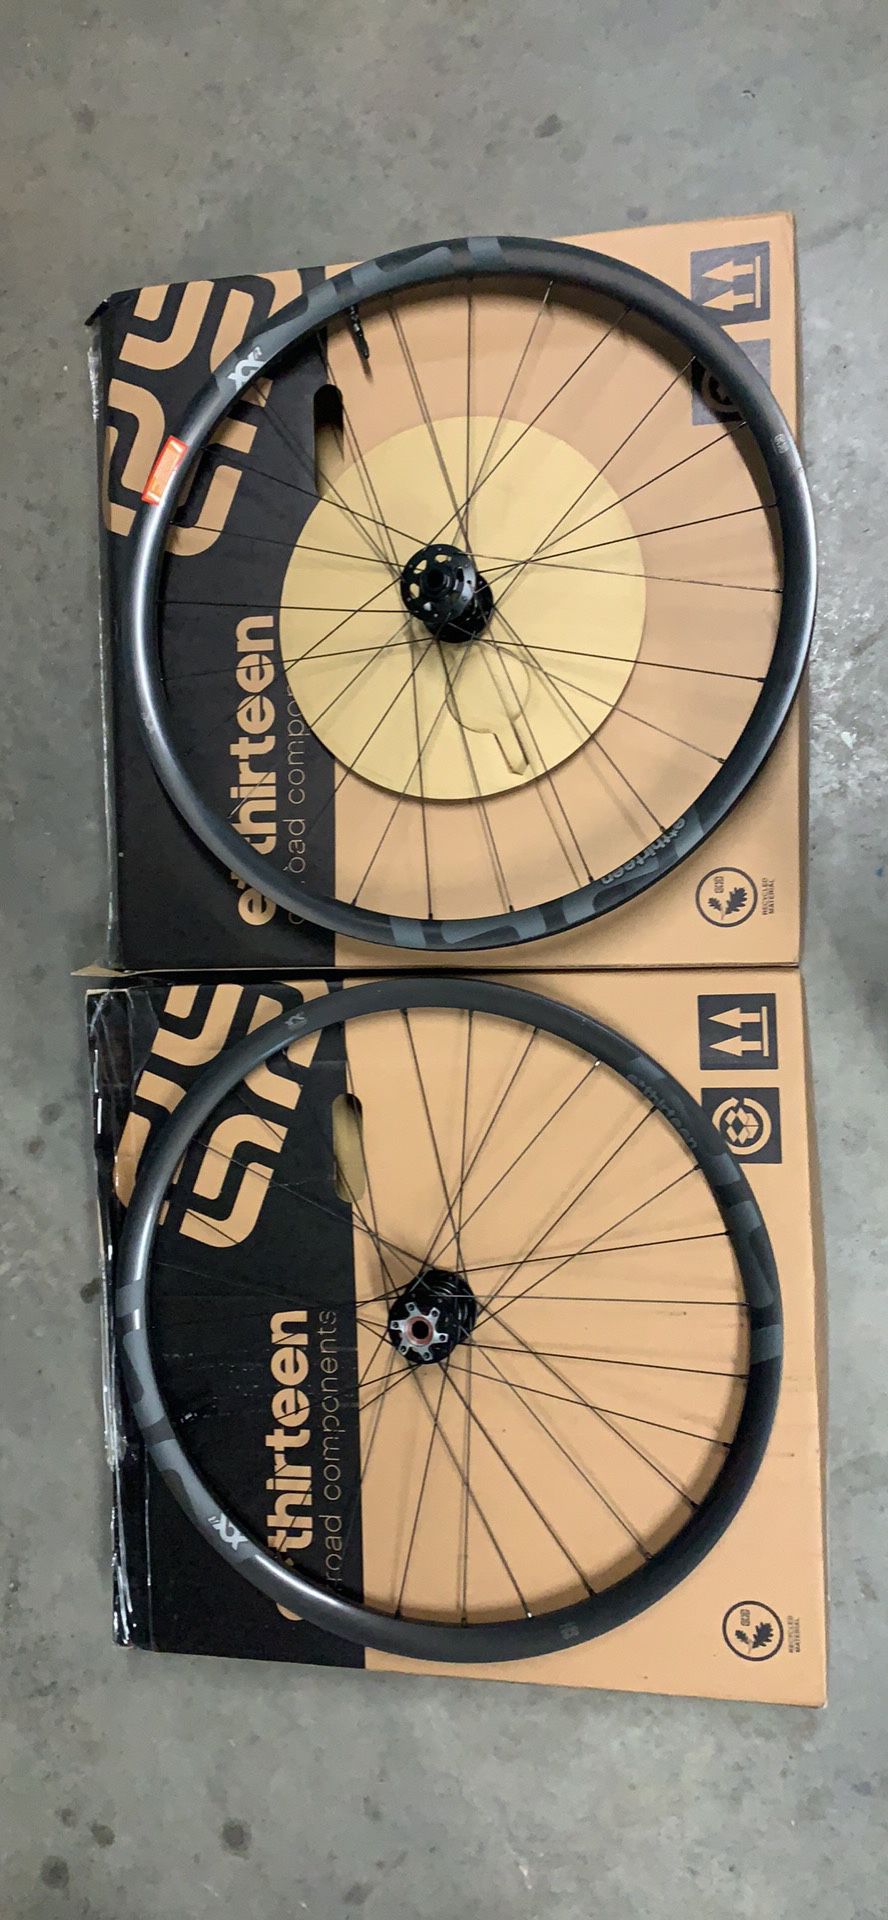 29” ethirteen mountain bike wheels